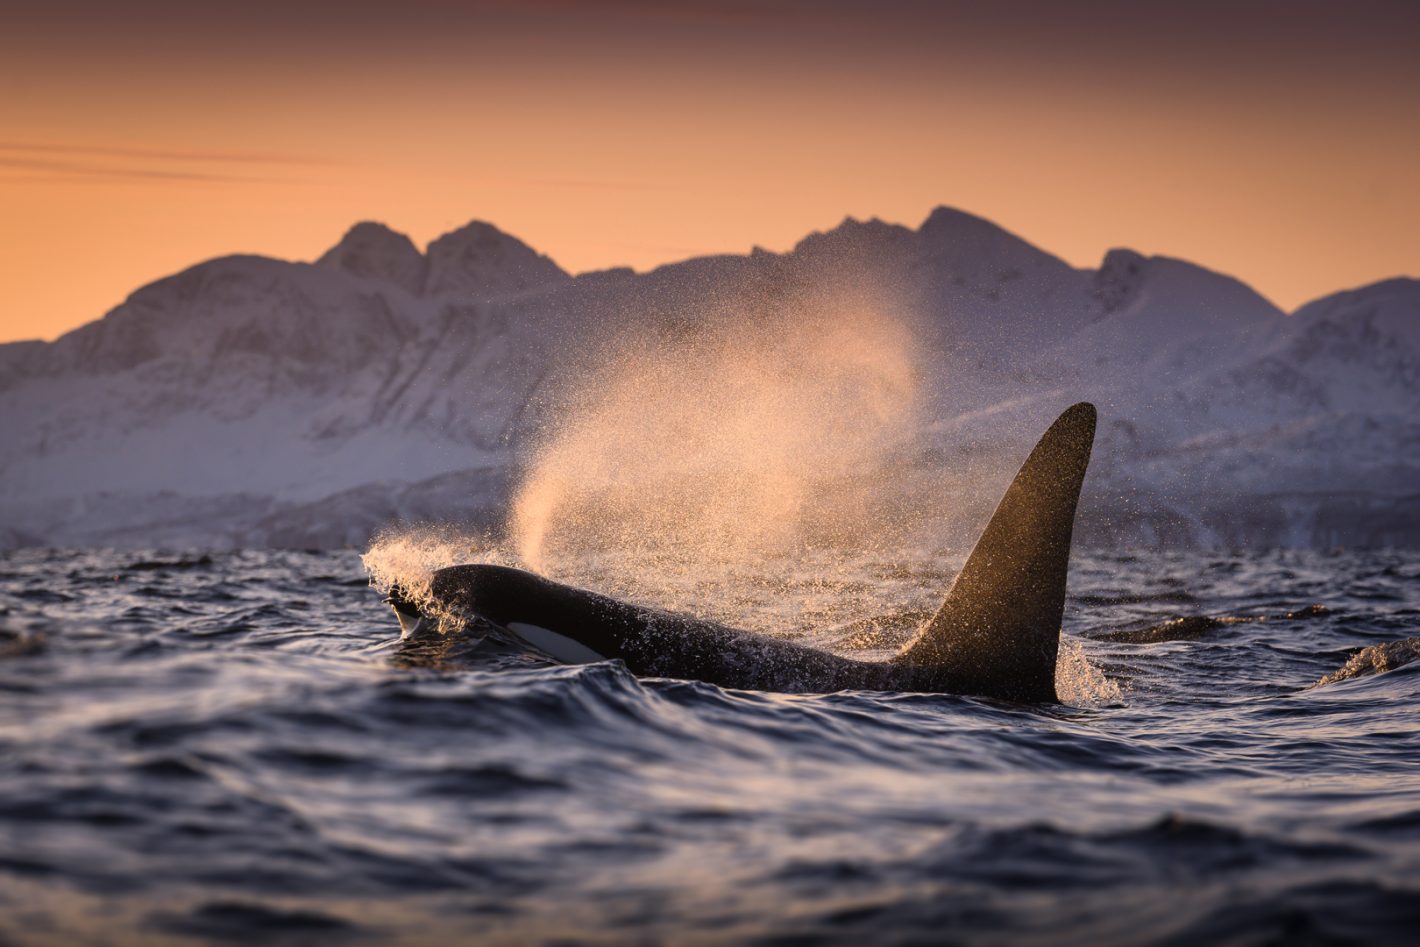 George Karbus voyage à de nouvelles profondeurs pour photographier la plus grande faune de l'océan